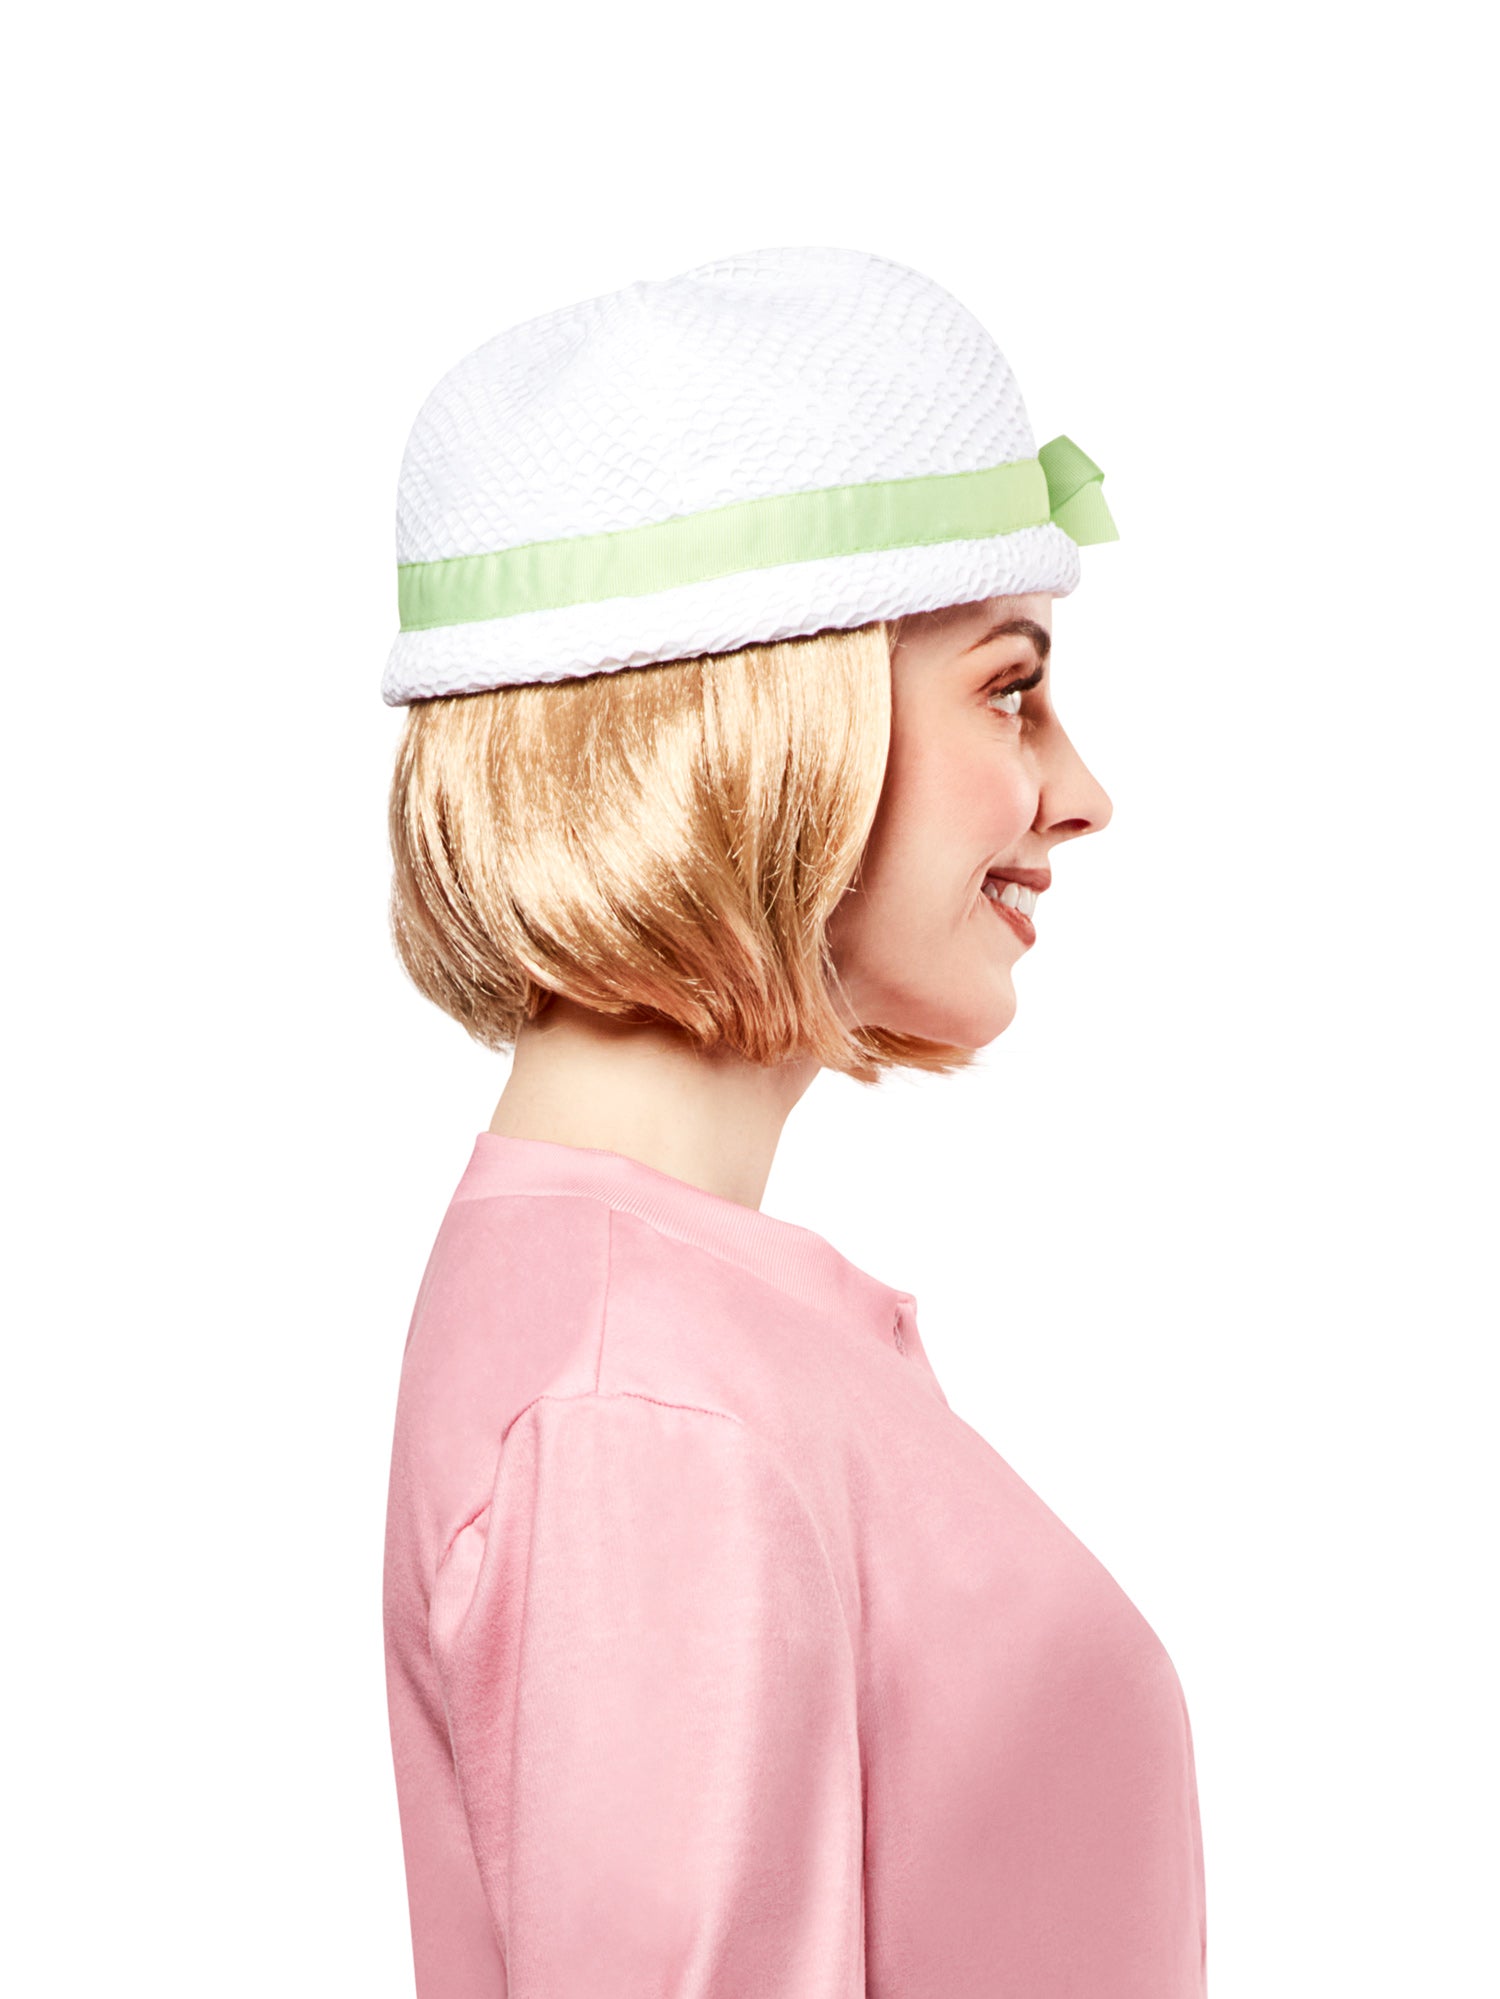 Women's American Girl Kit Kittredge Blonde Bob Wig - costumes.com